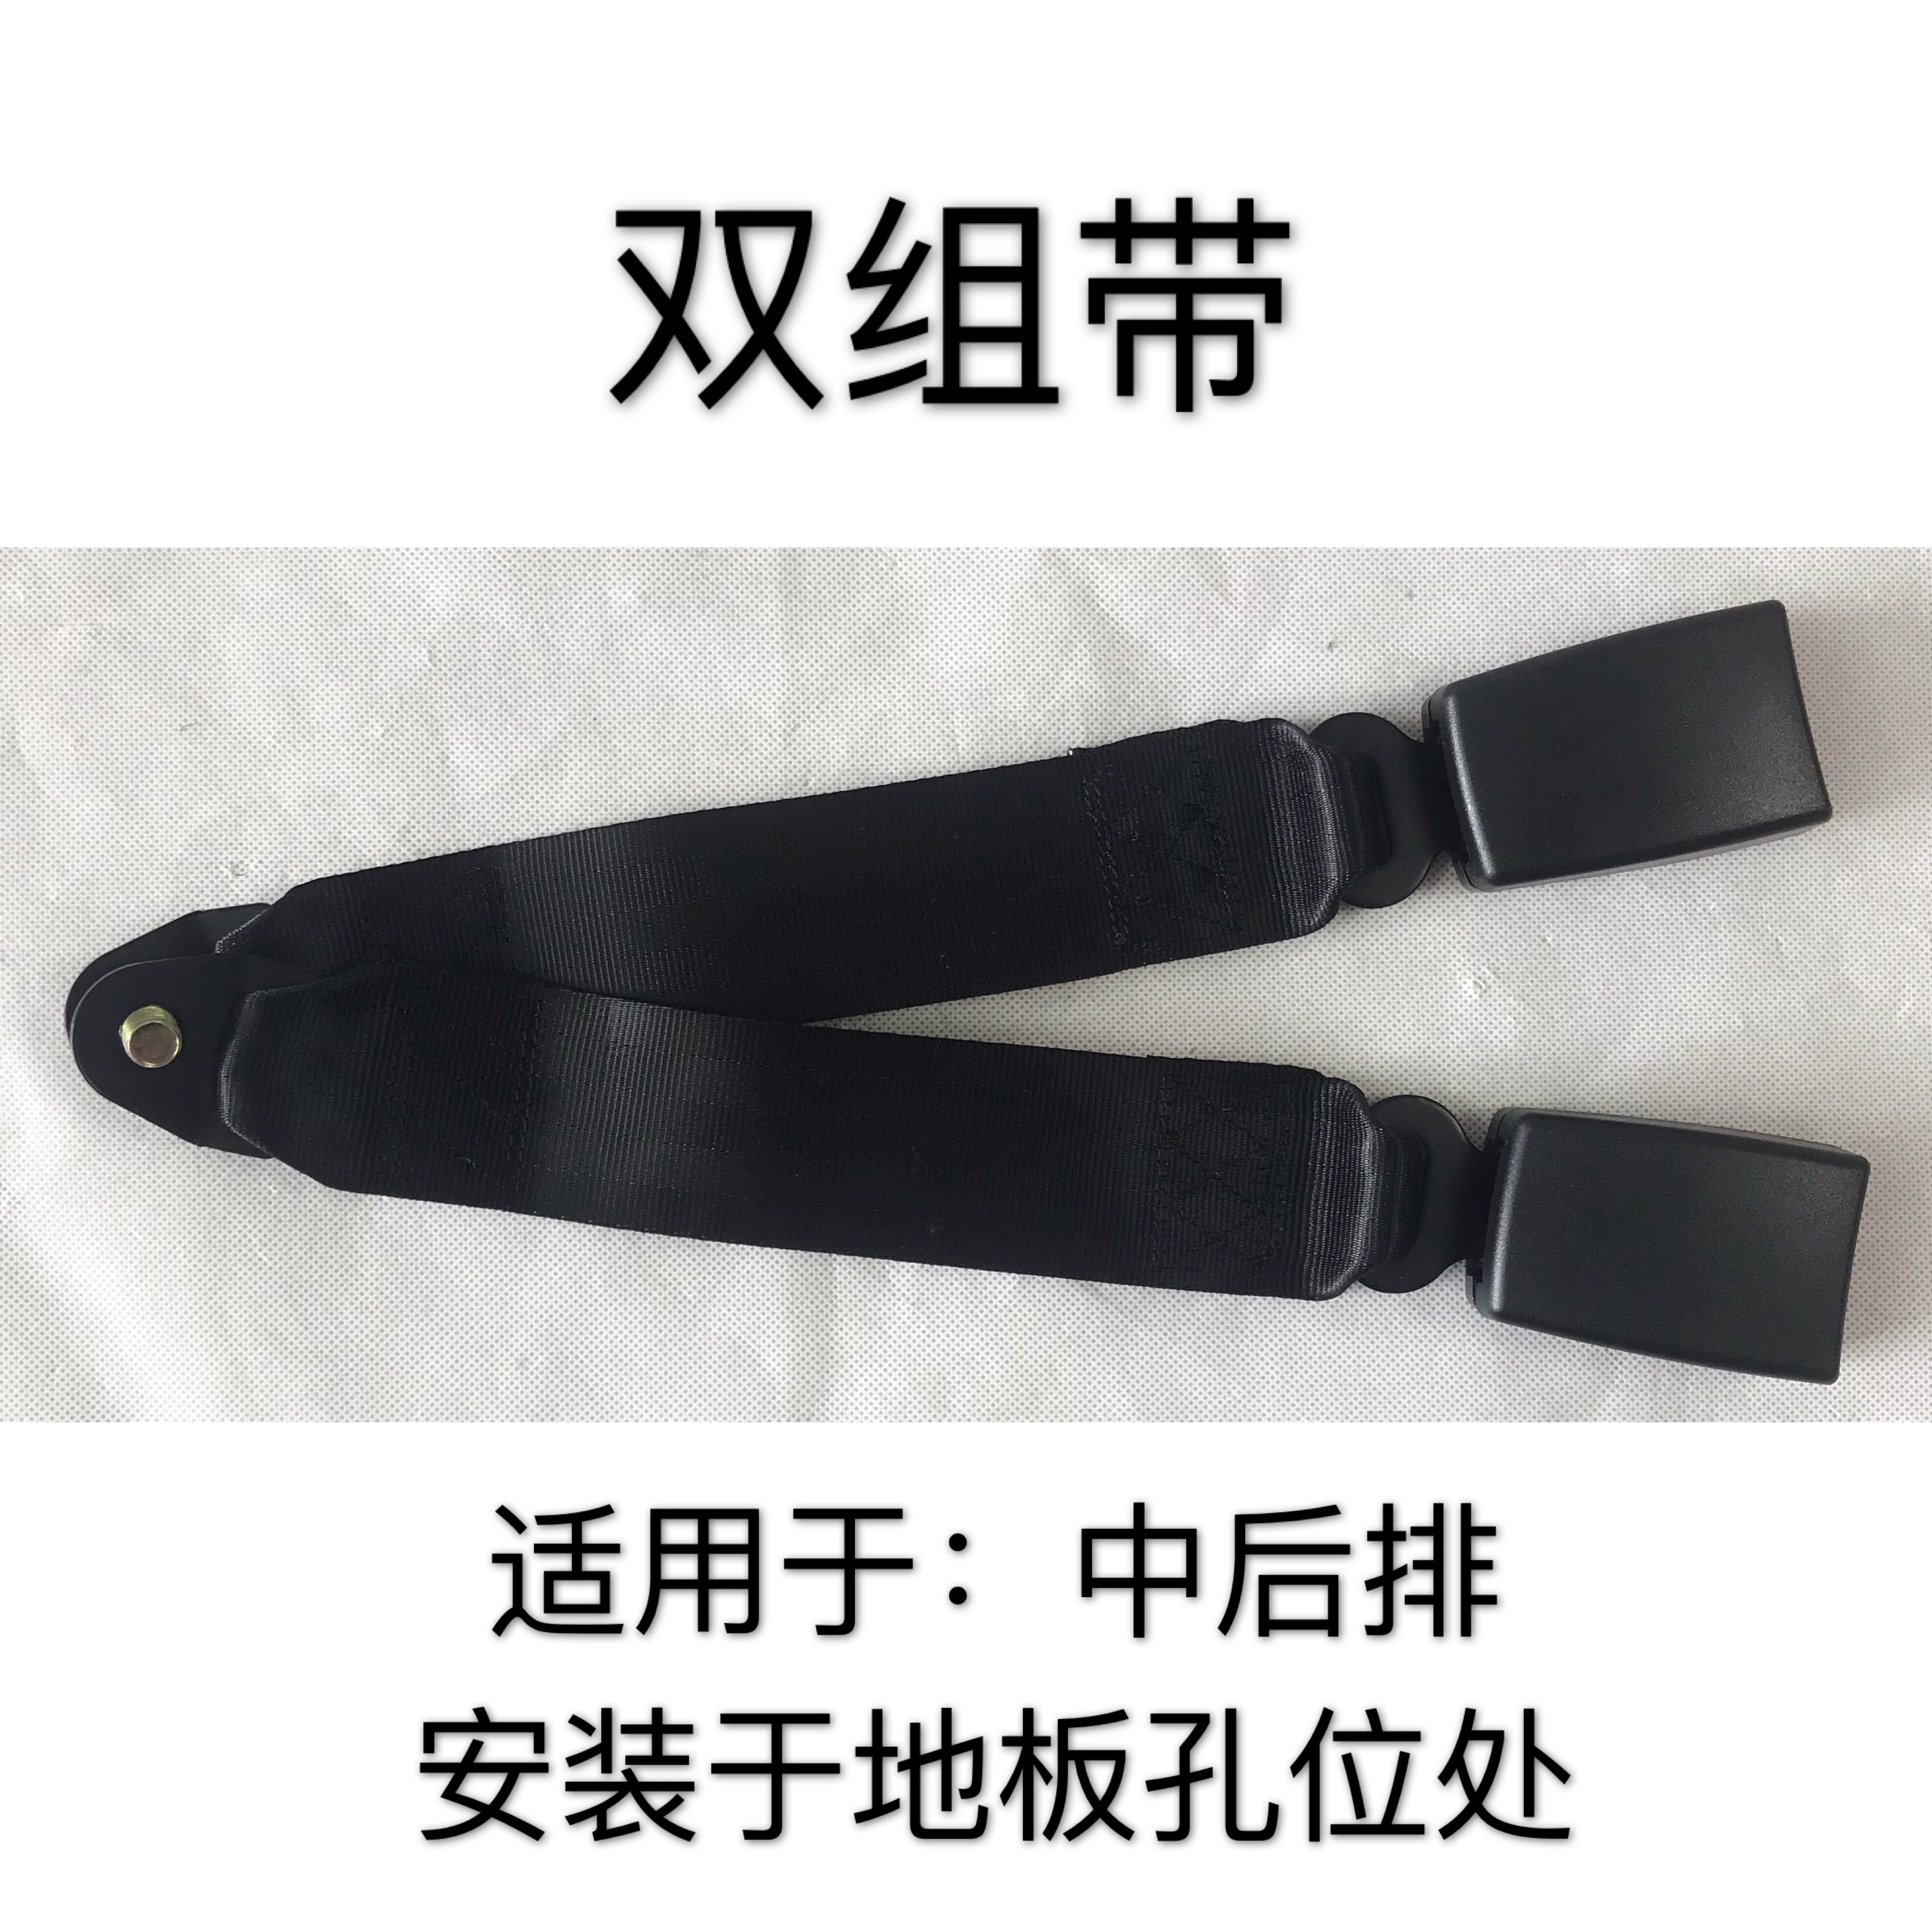 đai an toàn Wulingzhiguang 3671 6376 6388 6390 6400 6389 Xingwangzhong dây an toàn hàng ghế sau đai bảo hộ toàn thân dây đeo an toàn toàn thân 